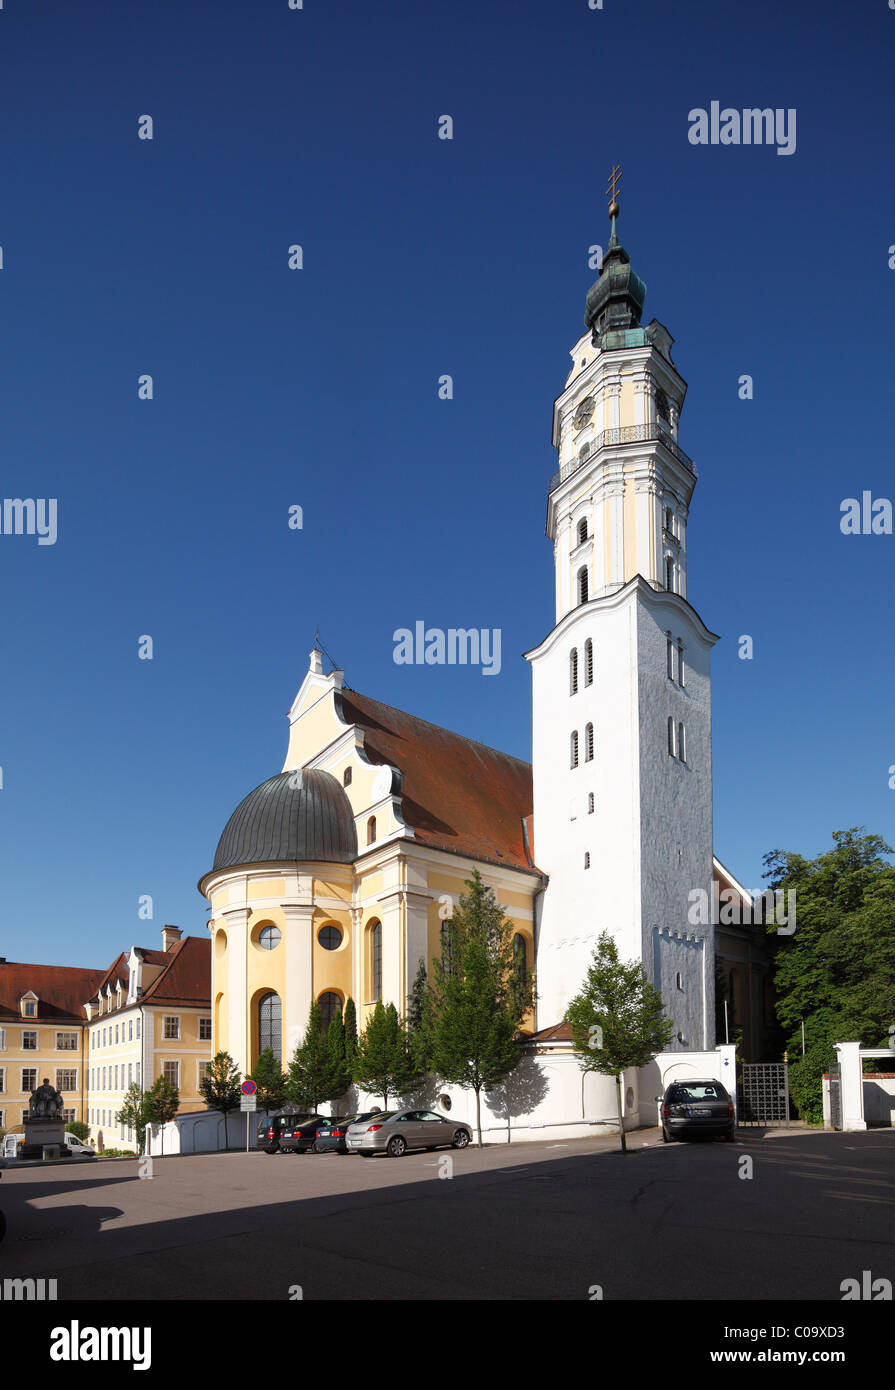 Heilig-Kreuz-Kirche church, Donauwoerth, Donauried, Swabia, Bavaria, Germany, Europe Stock Photo